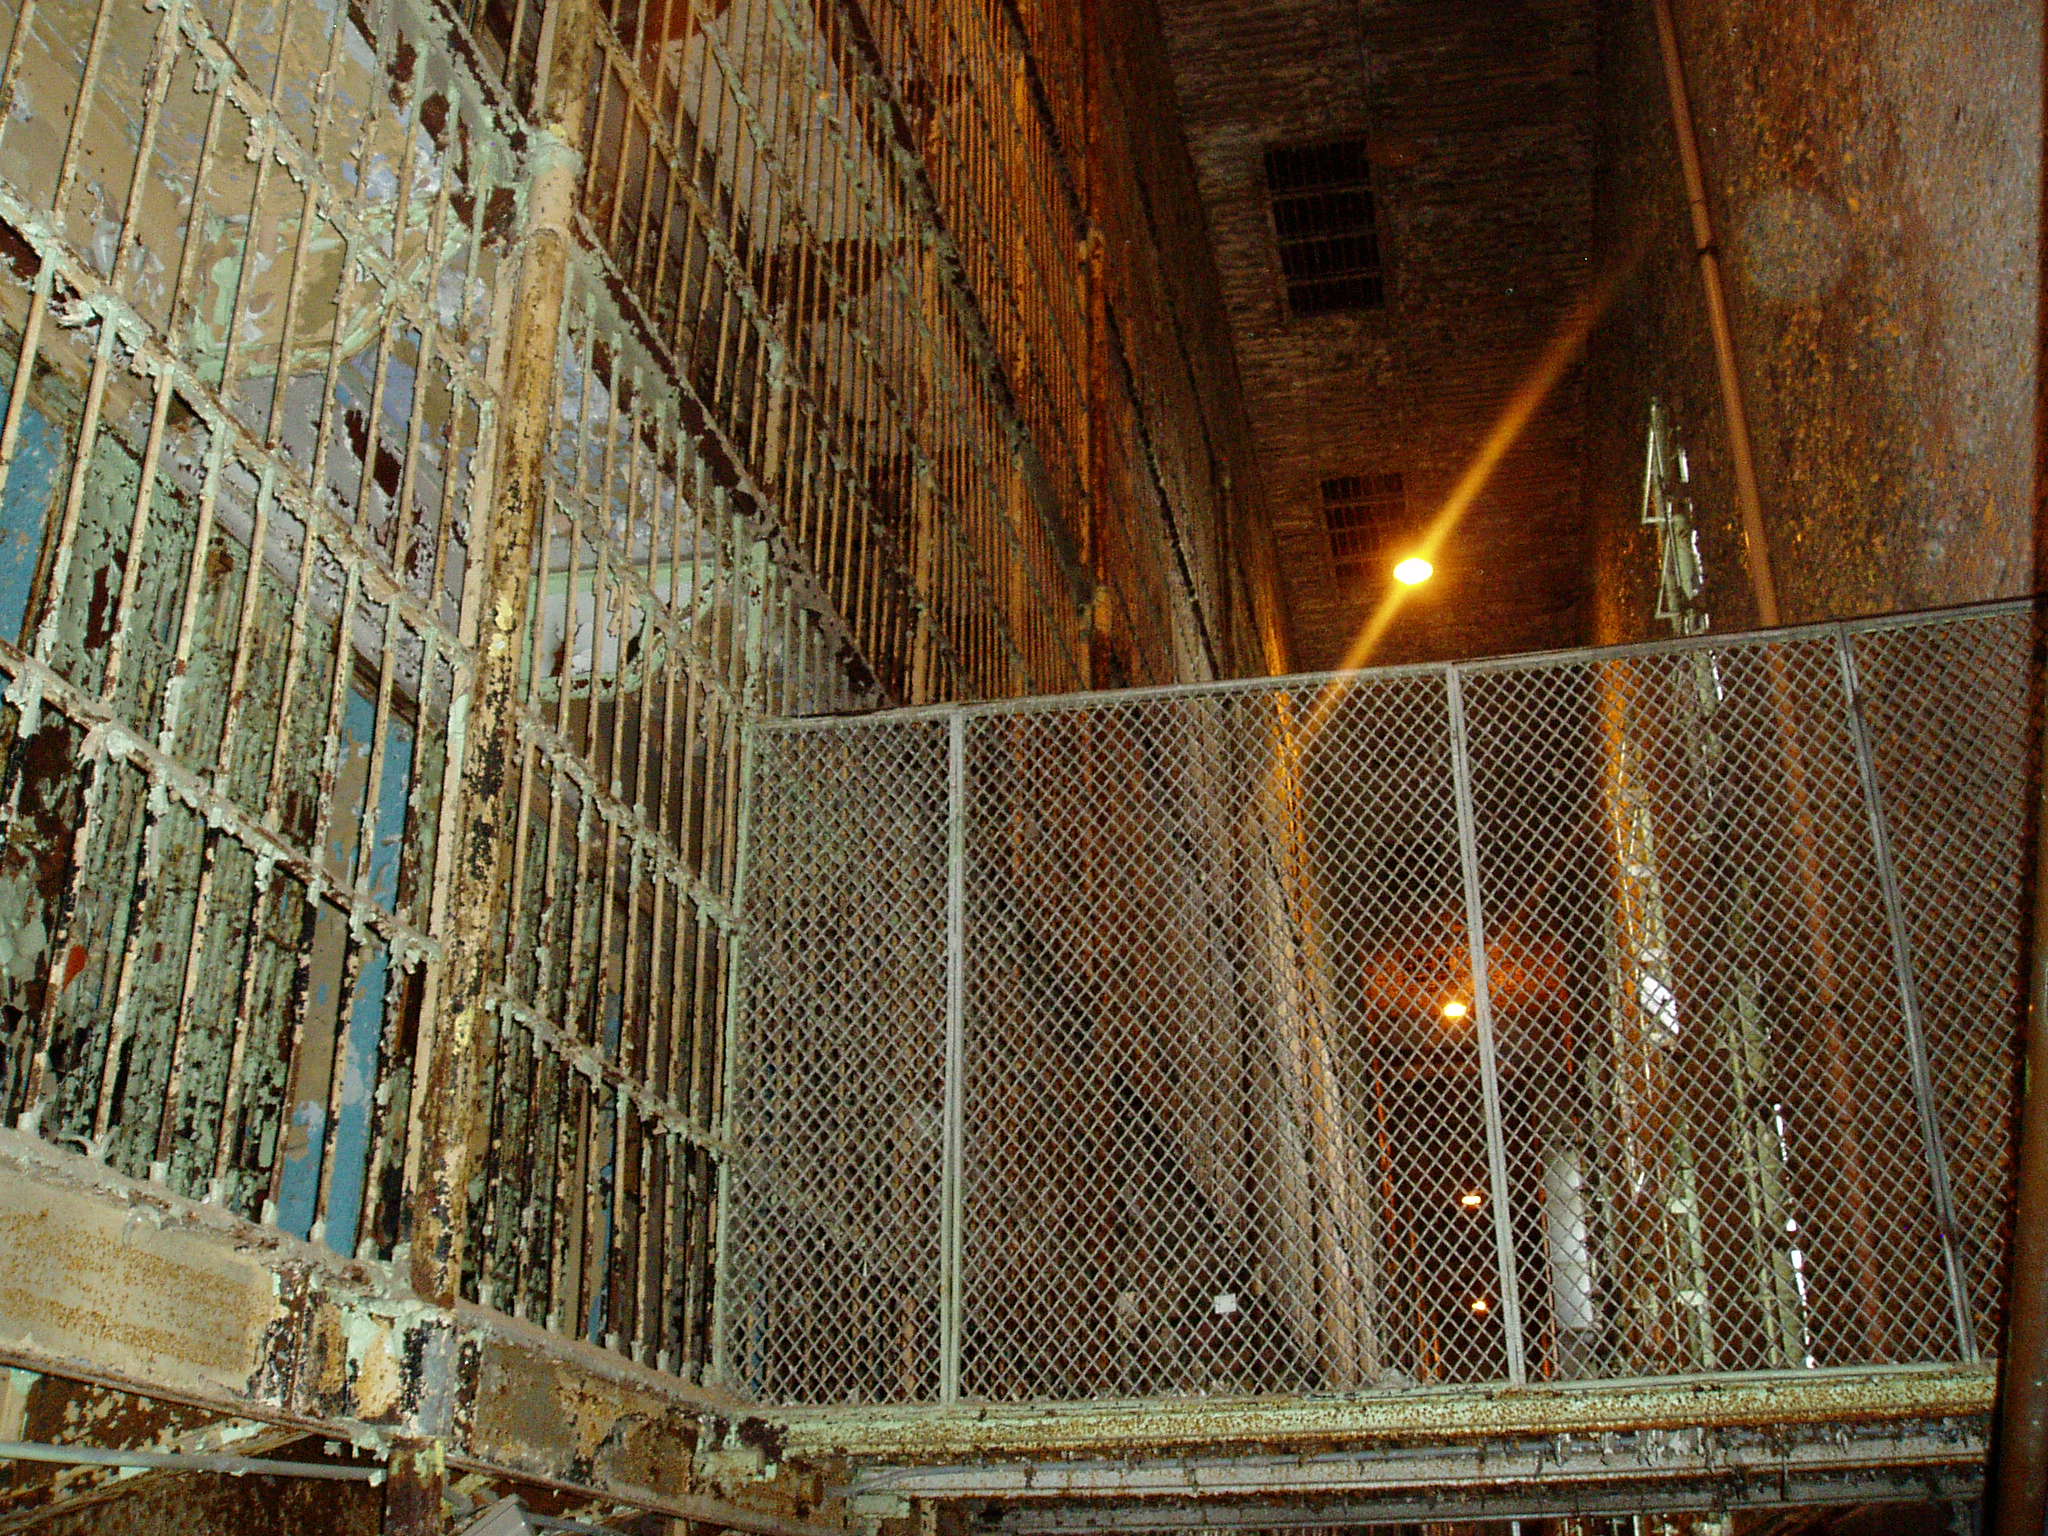 Shawshank Prison